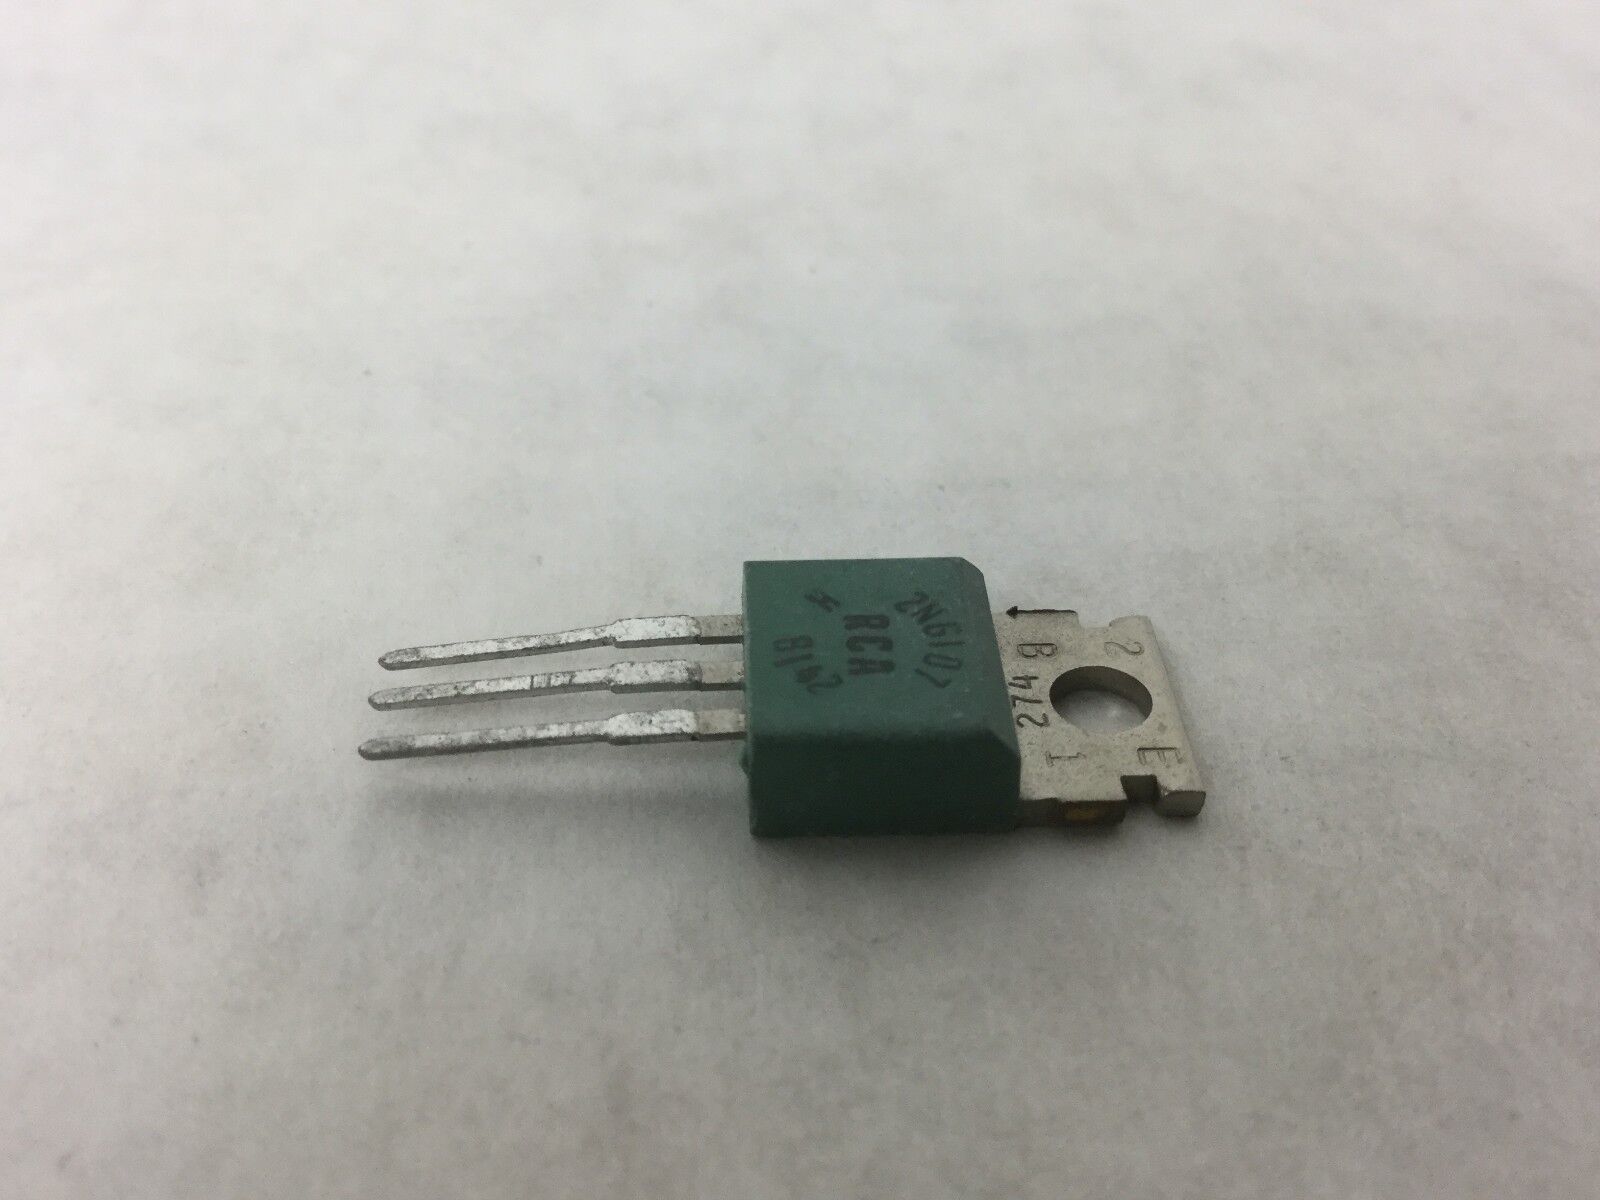 RCA 2NG107 Transistor, Lot of 10, NEW